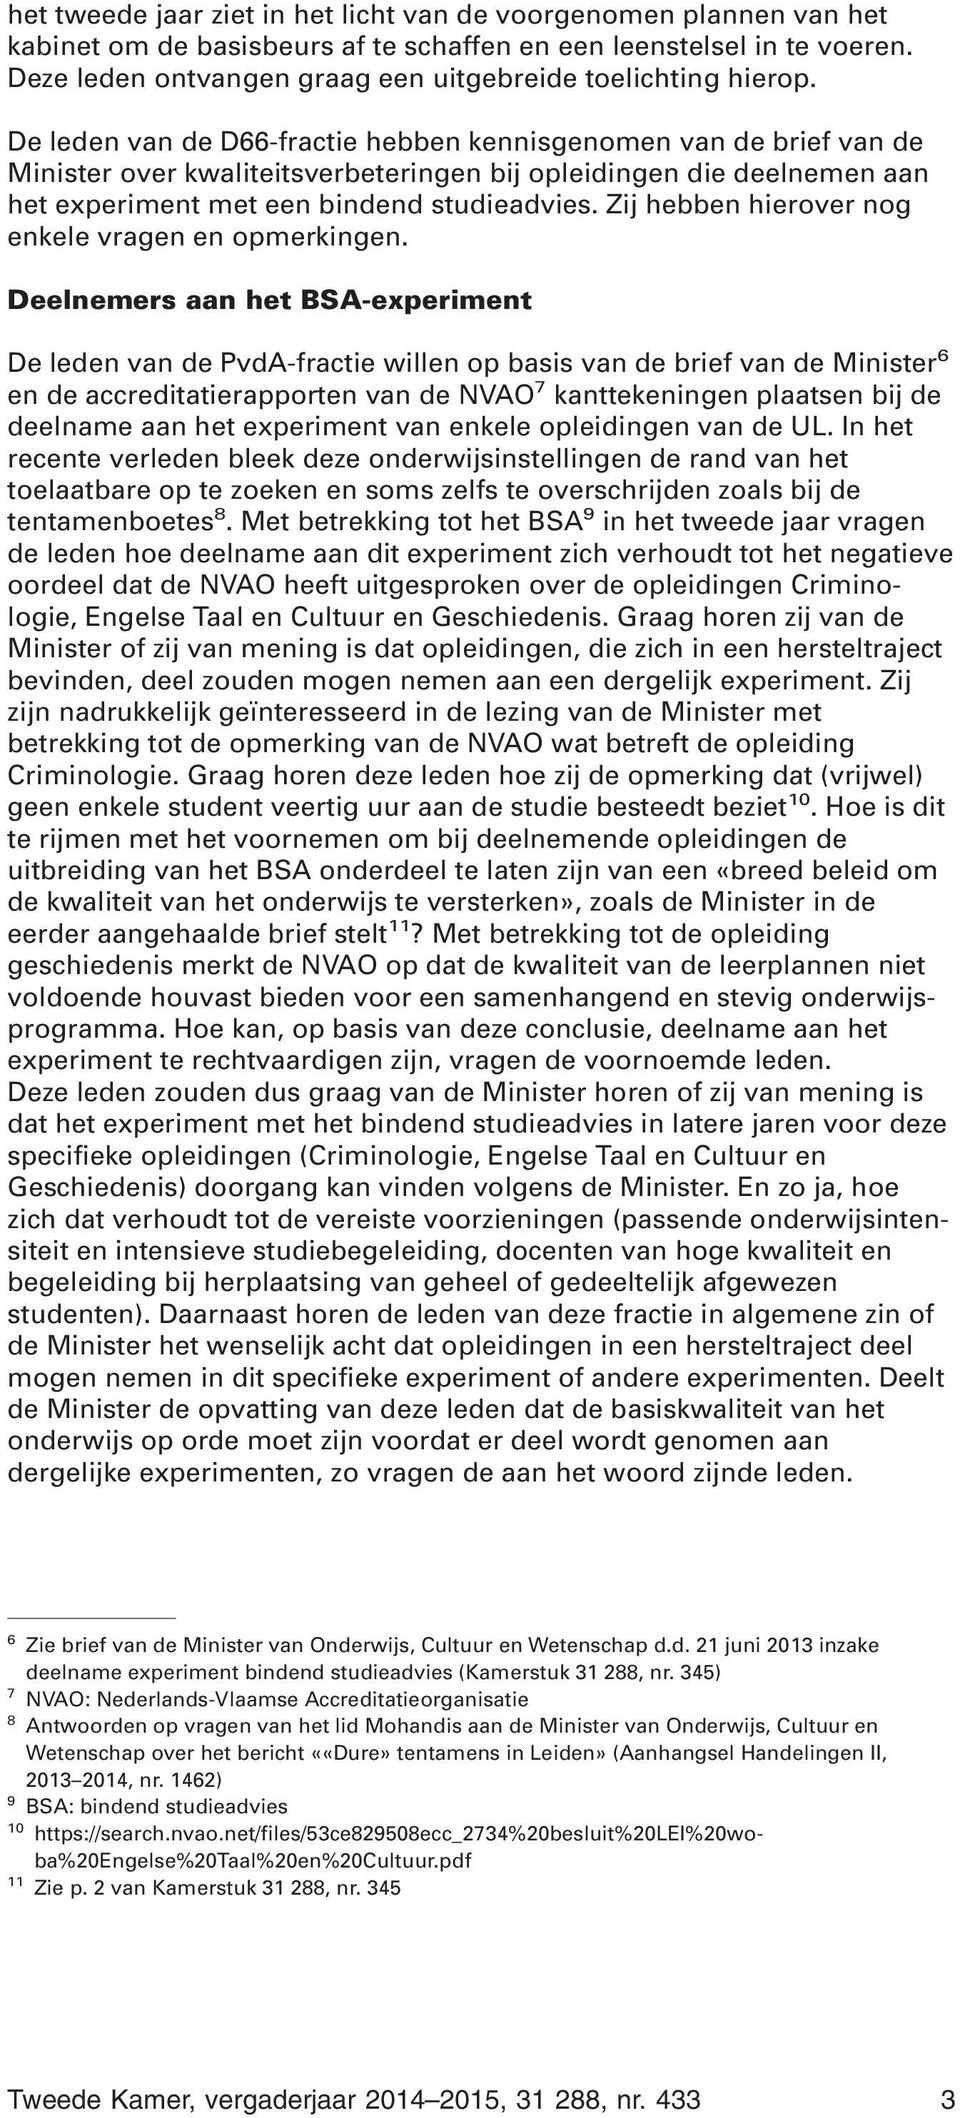 De leden van de D66-fractie hebben kennisgenomen van de brief van de Minister over kwaliteitsverbeteringen bij opleidingen die deelnemen aan het experiment met een bindend studieadvies.